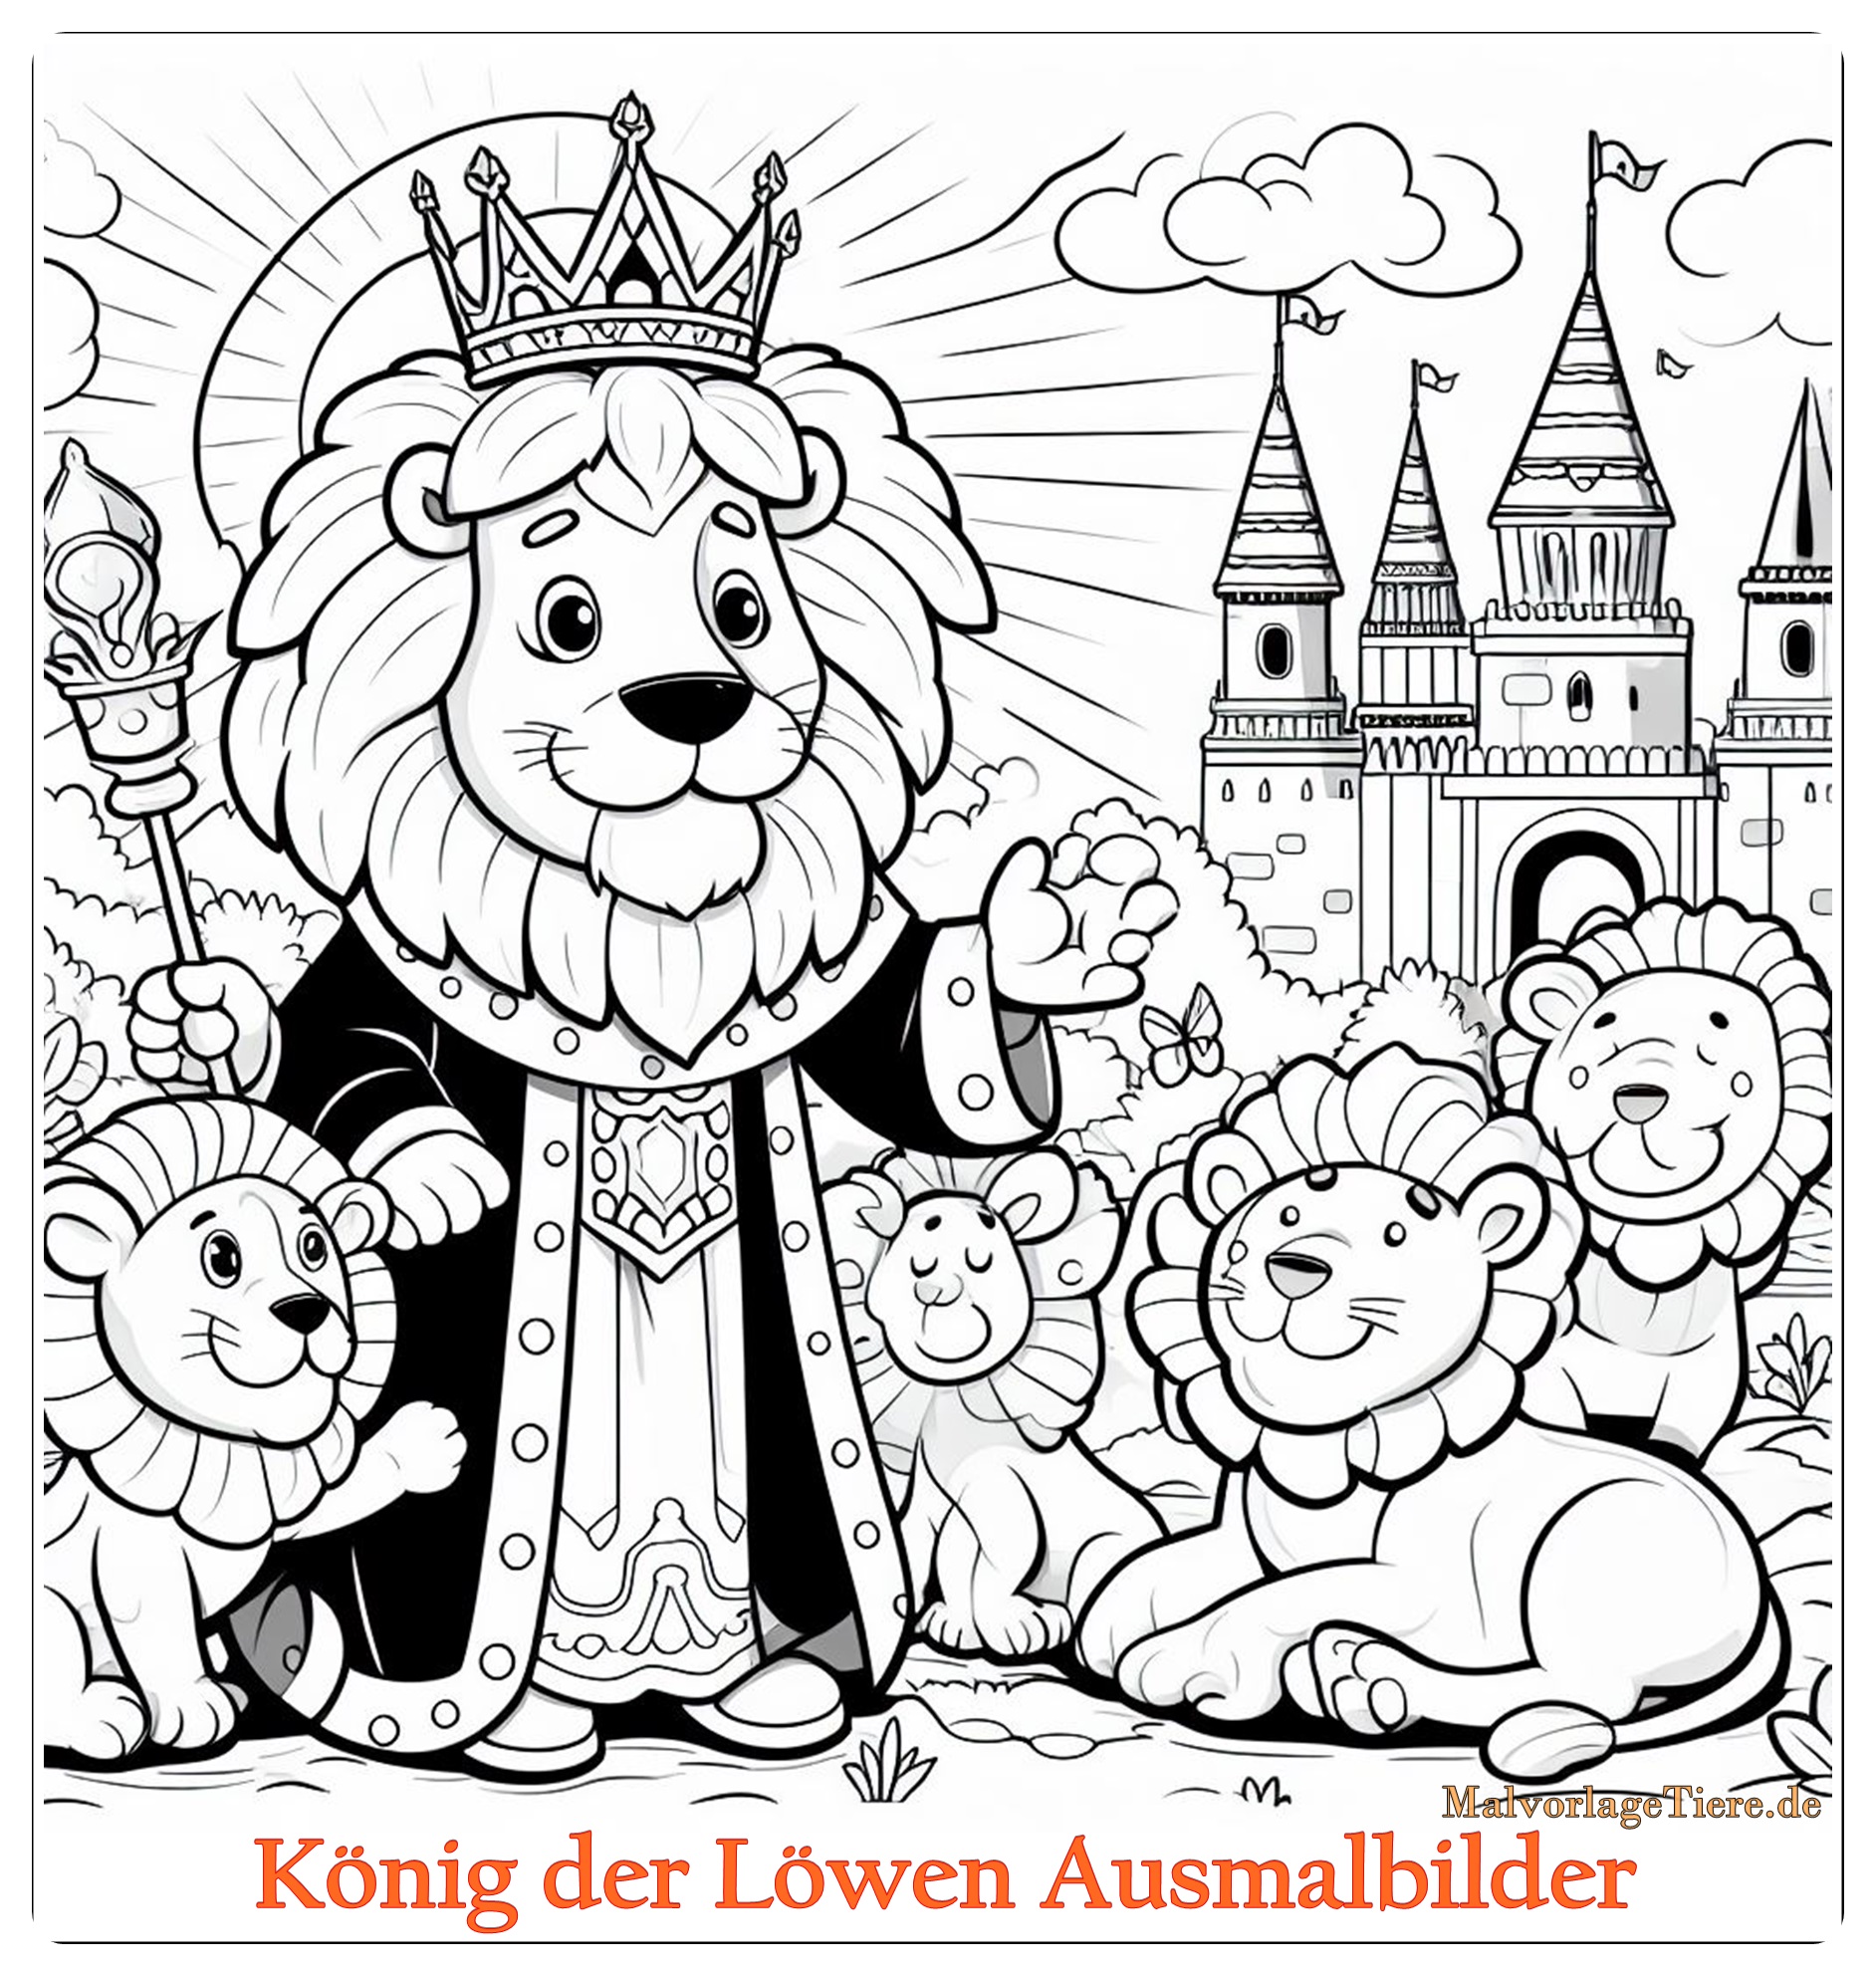 König der Löwen Ausmalbilder 02 by stadiongucker.de